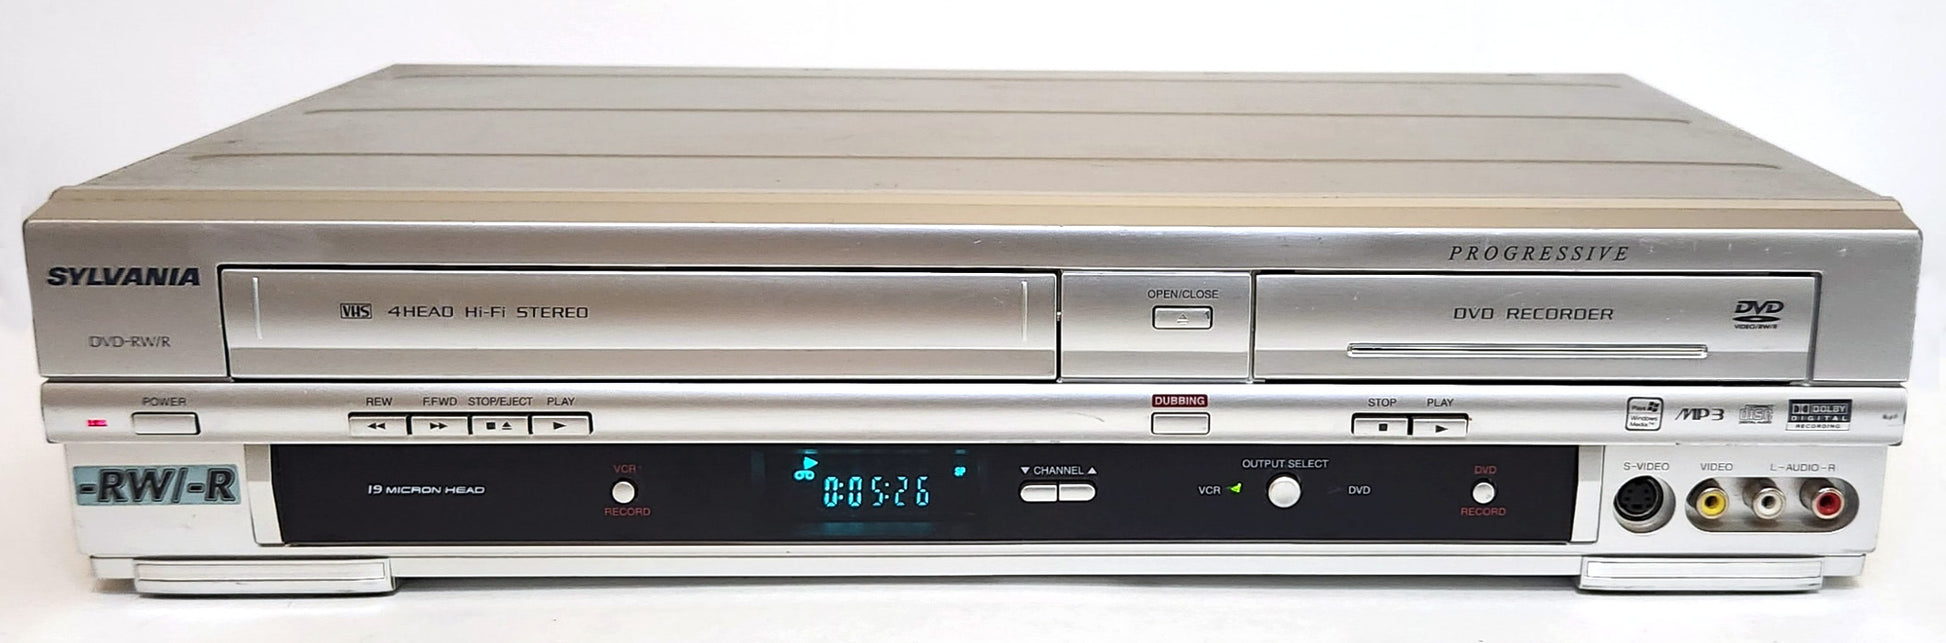 Sylvania DVR90VG VCR/DVD Recorder Combo - Front